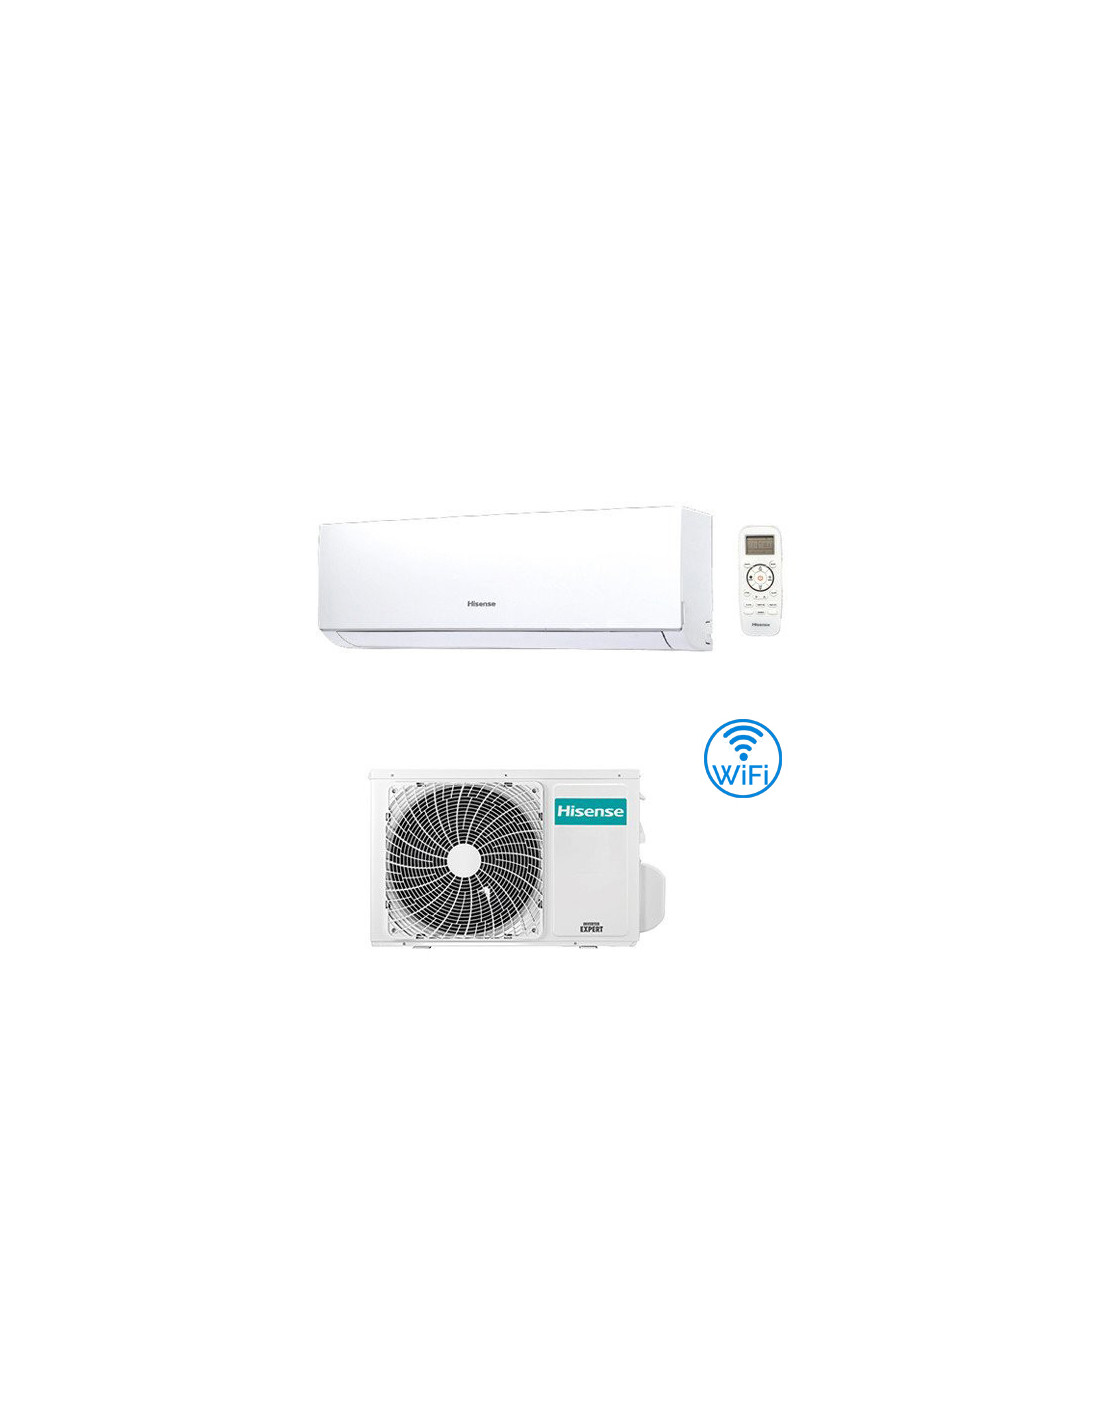 Climatizzatore Condizionatore Hisense New Comfort Wifi Incluso 9000 4035